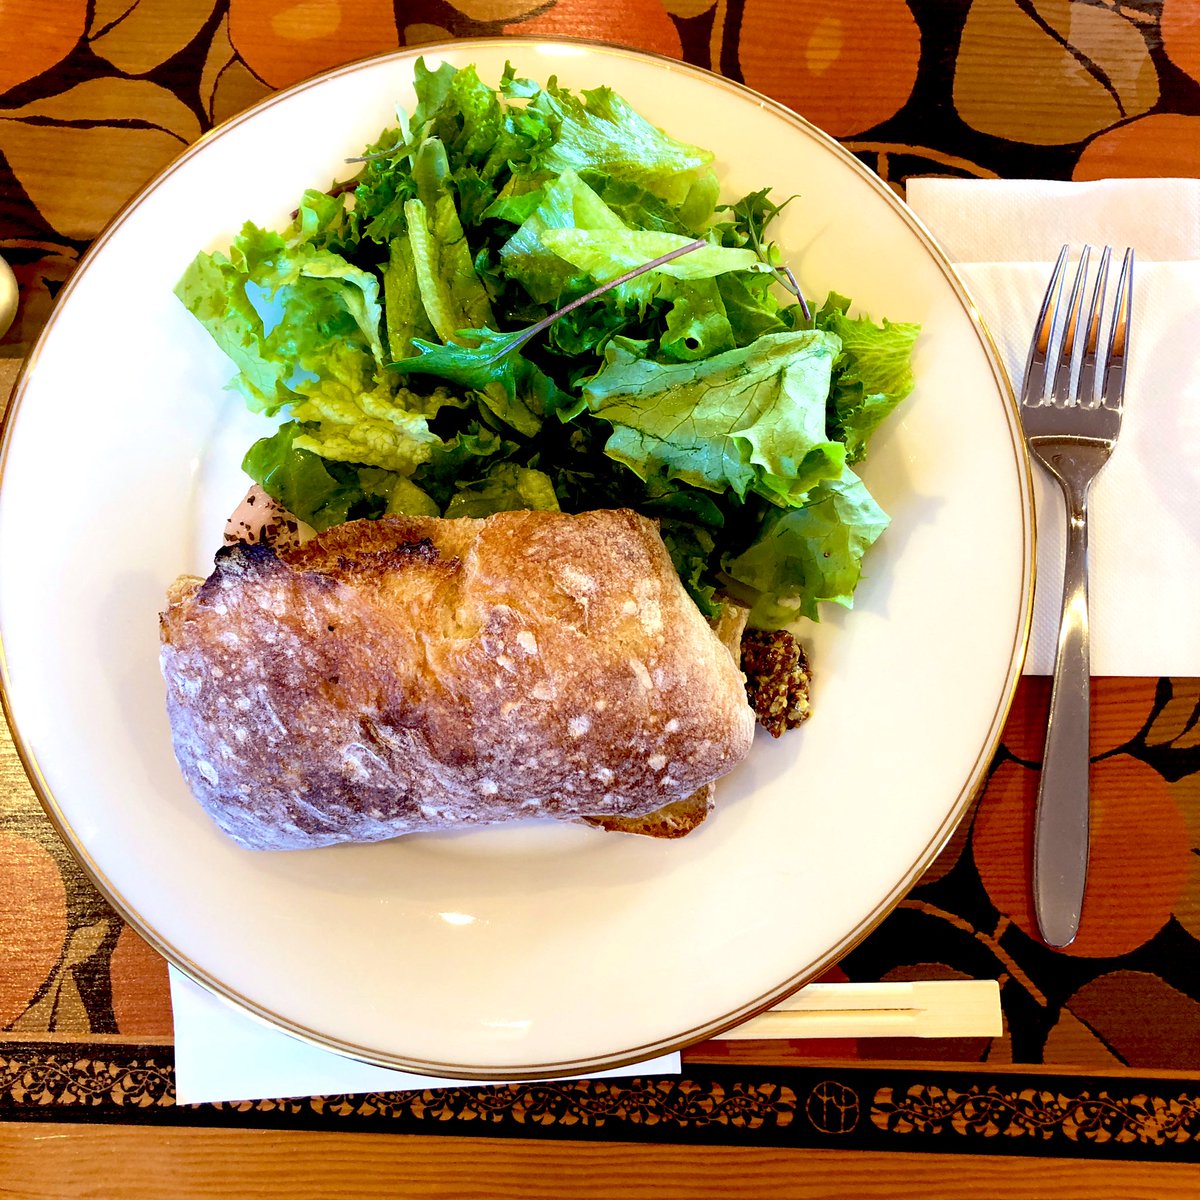 夢二郷土美術館本館のカフェでお昼ごはんいただきました。
岡山で大人気のパン屋さんインダストリーさんのパンを使われたメニュー。めちゃ美味しかったです！メニュー名失念…
ご馳走様でした🙏✨✨